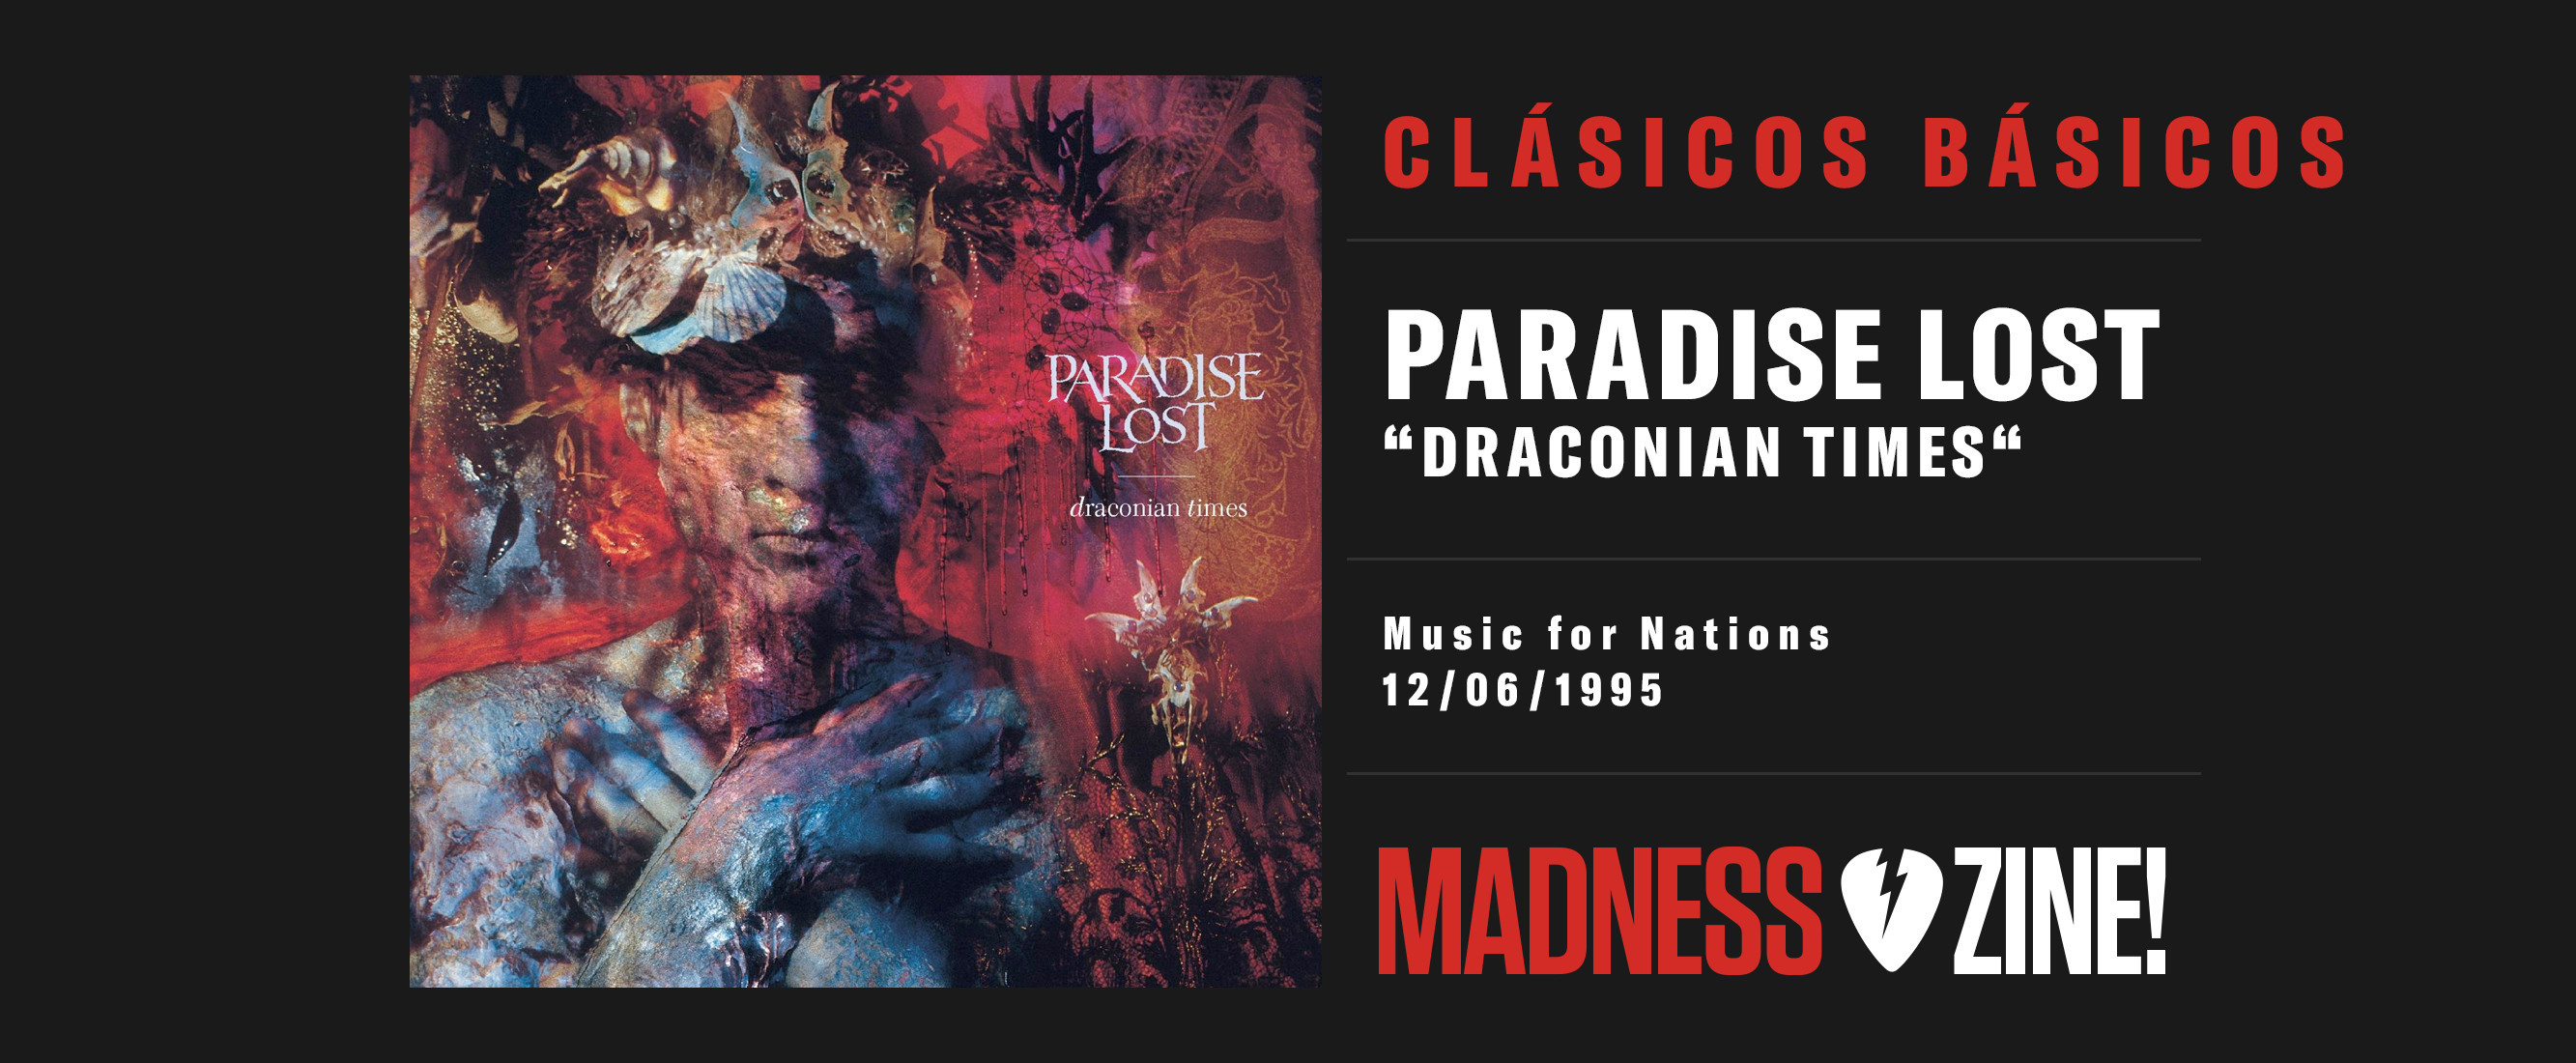 Clásicos Básicos: Paradise Lost 'Draconian Times'